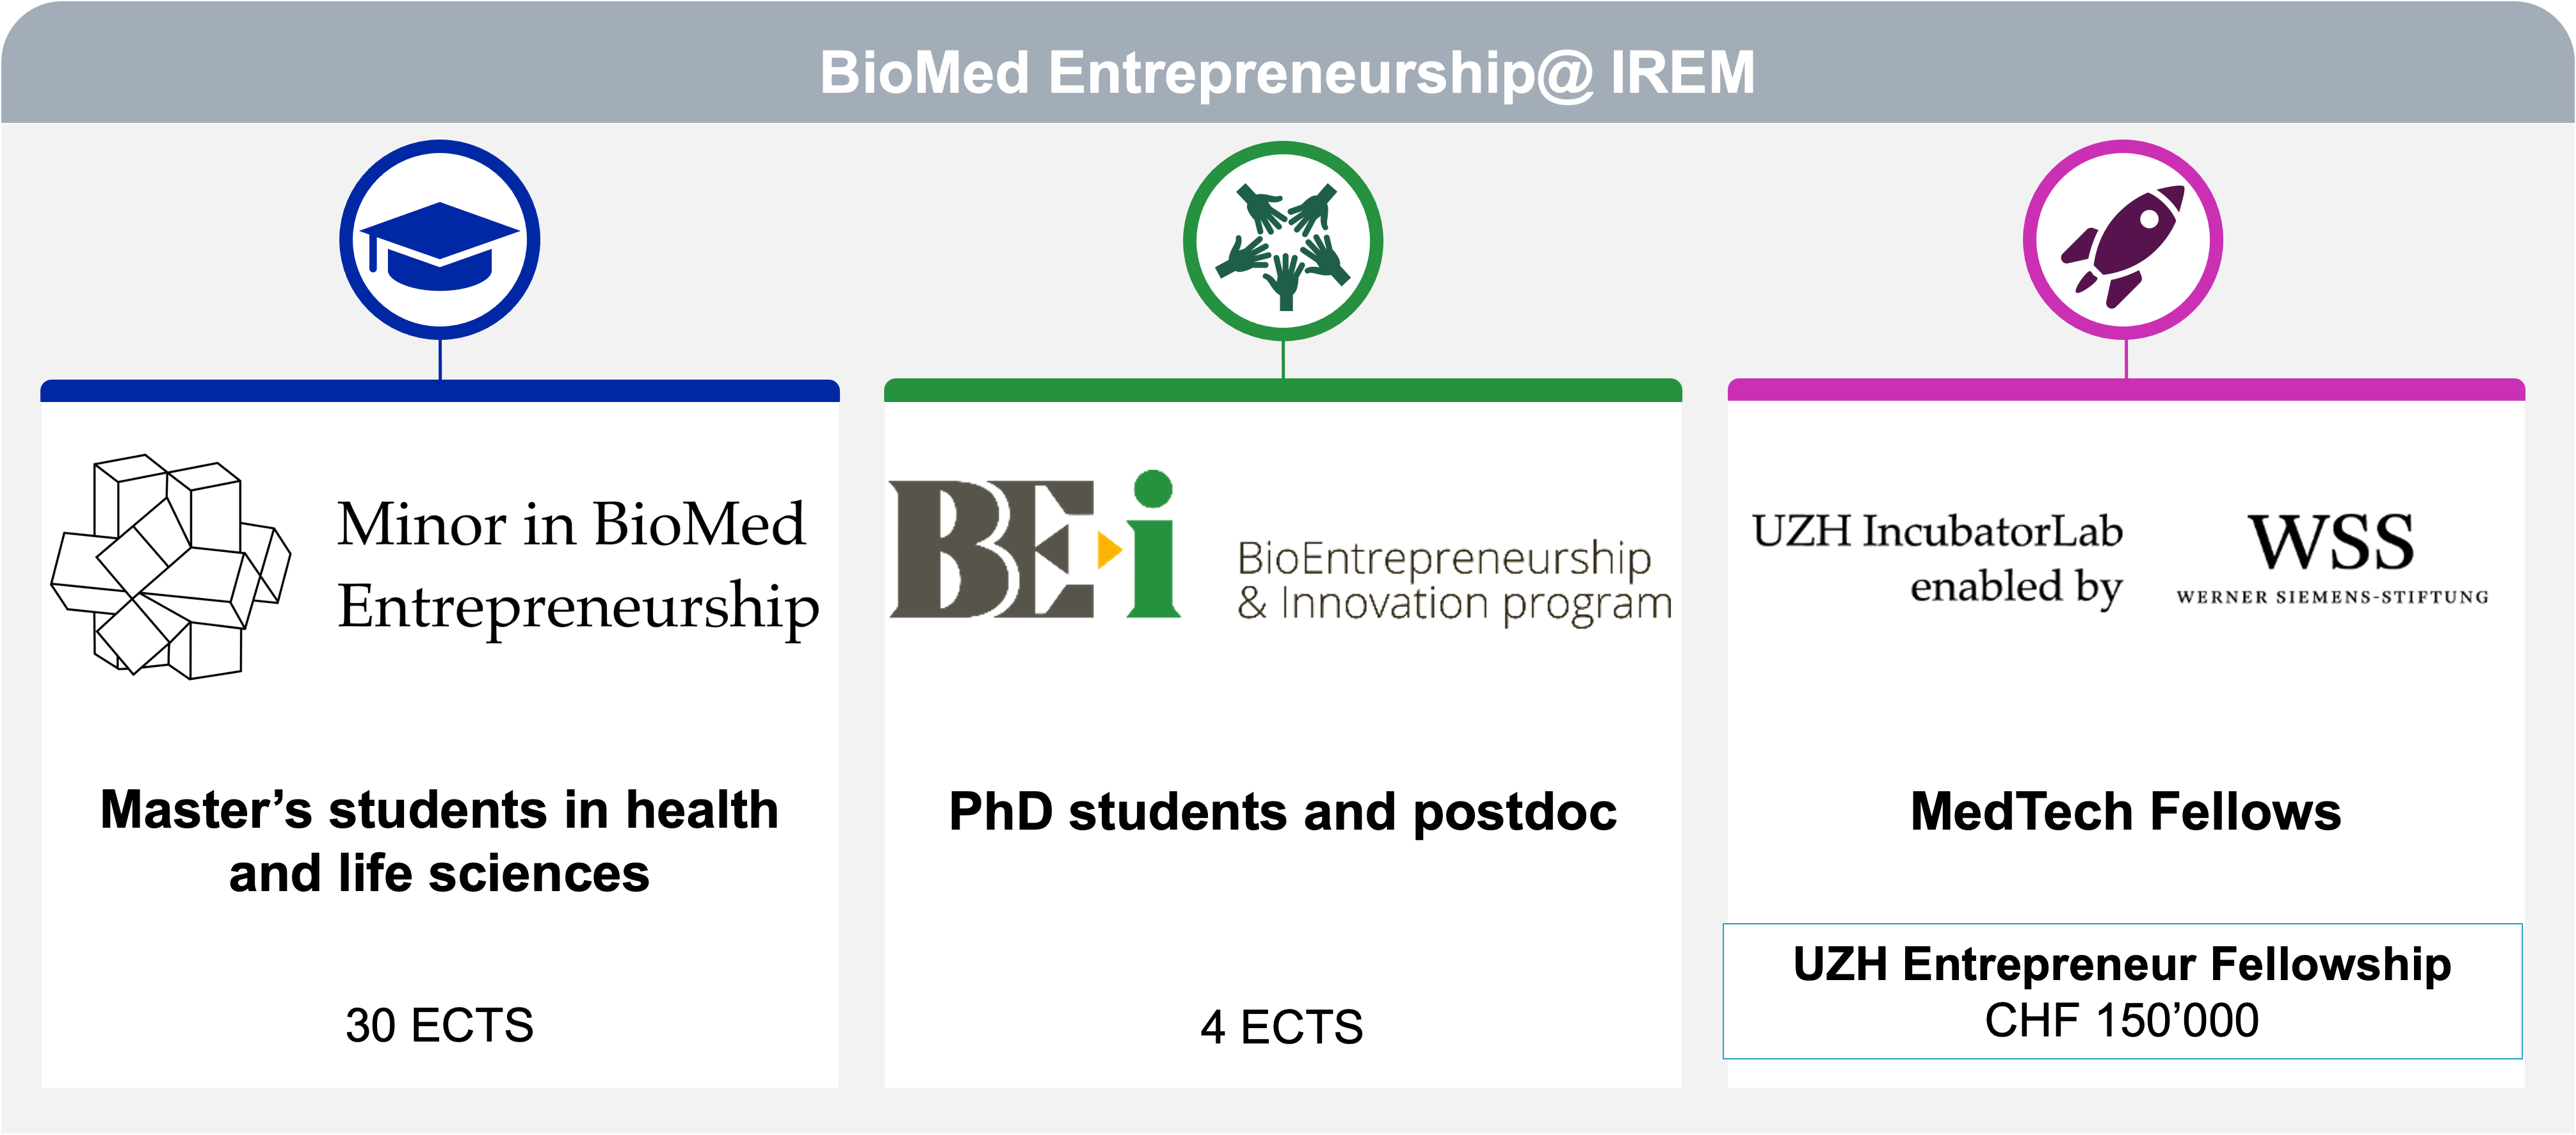 BioMed Entrepreneurship